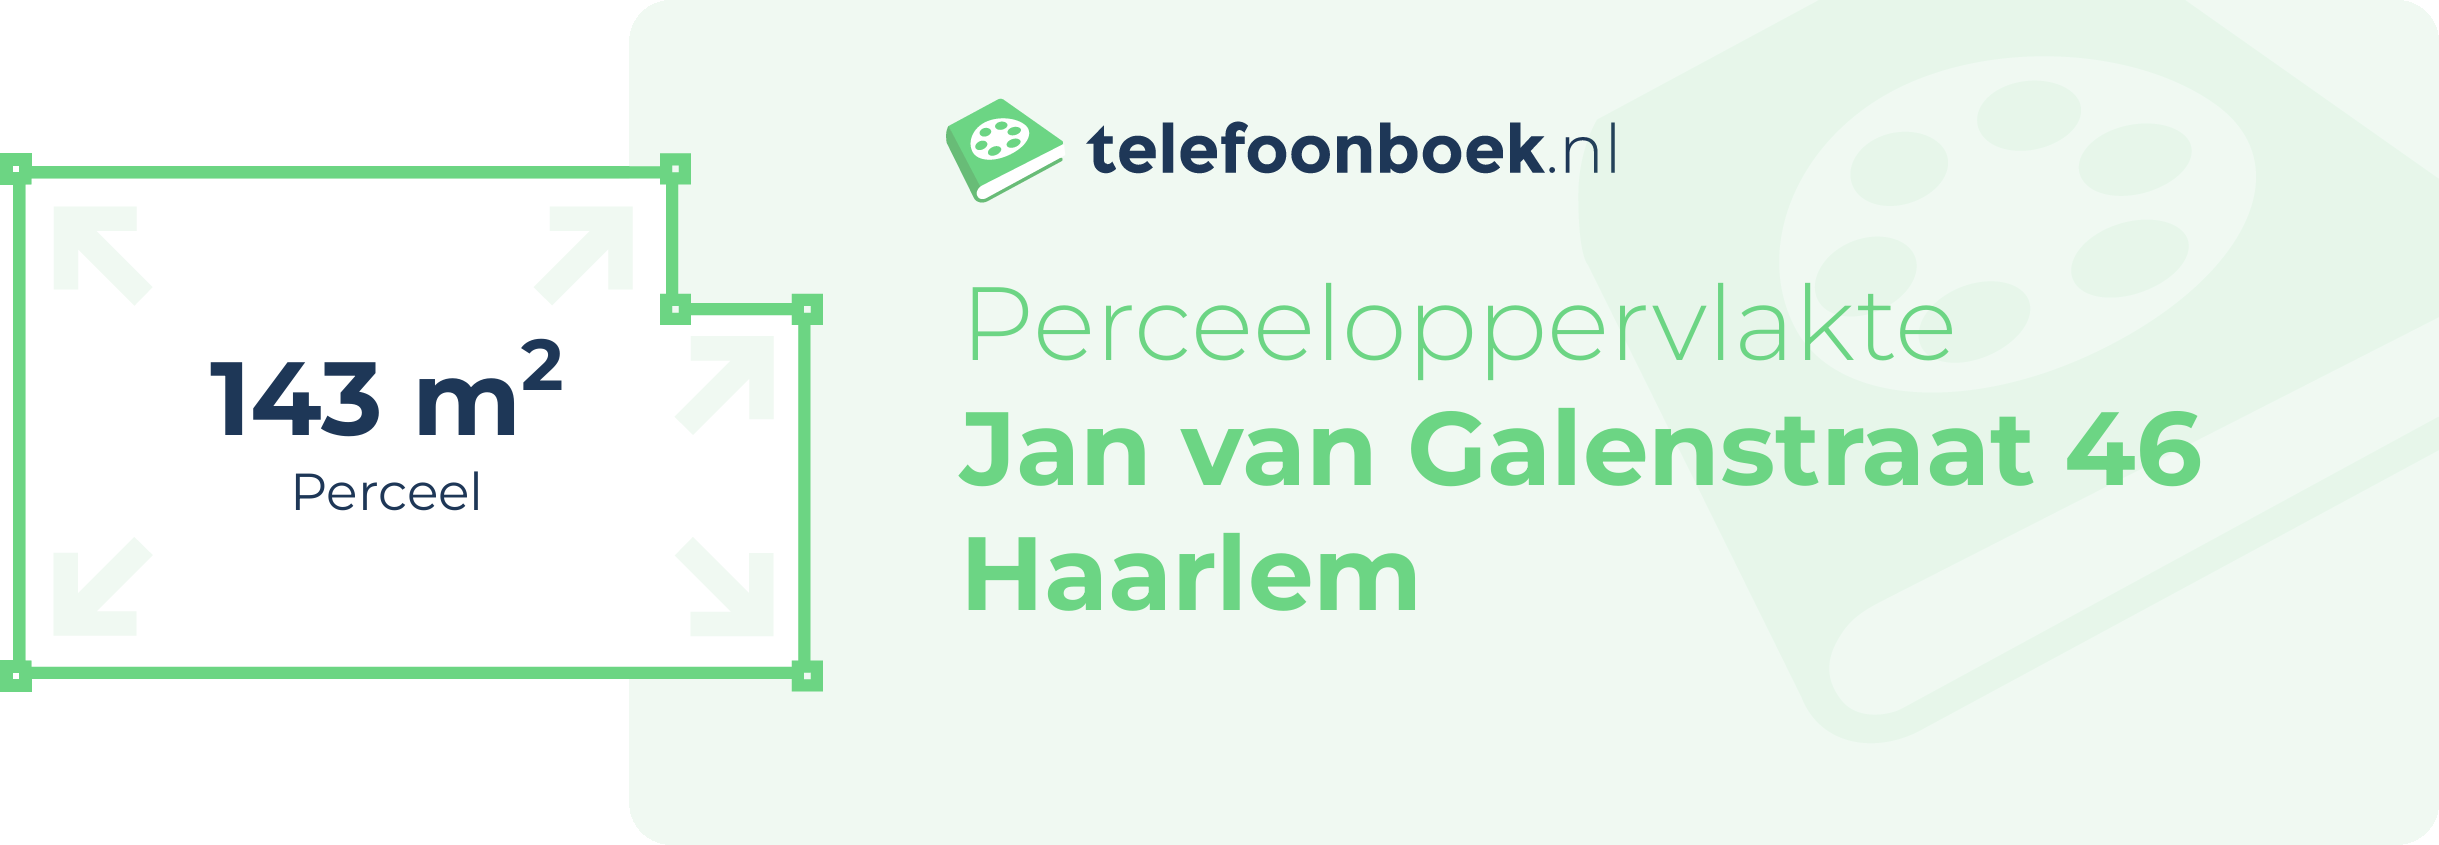 Perceeloppervlakte Jan Van Galenstraat 46 Haarlem